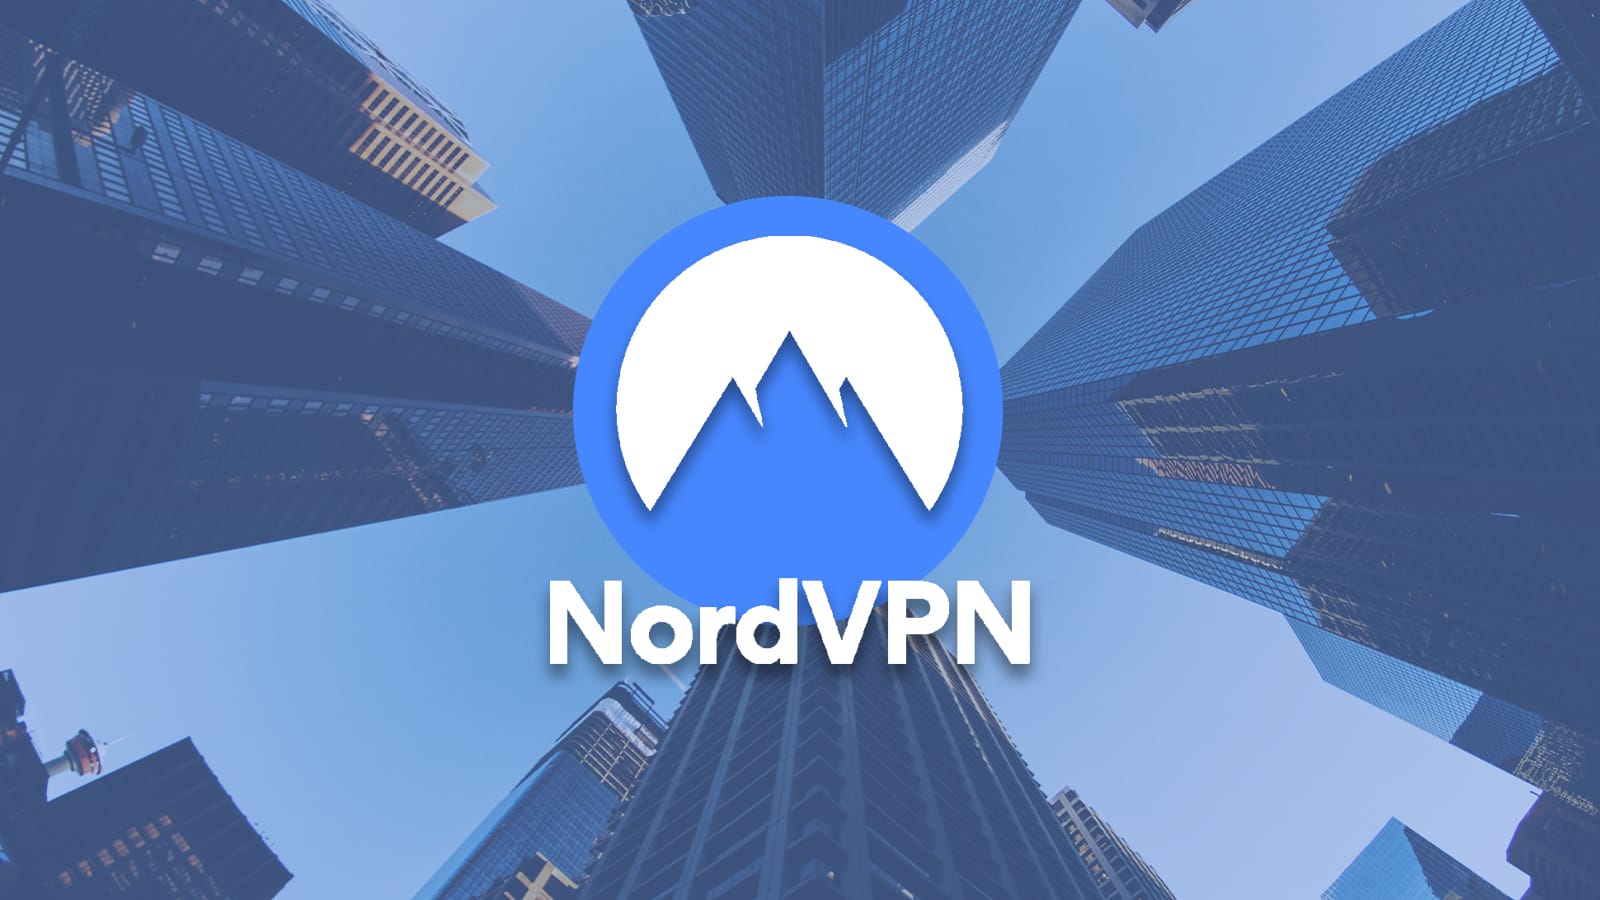 NordVPN-Logo-Skyscrapers-Background.jpg